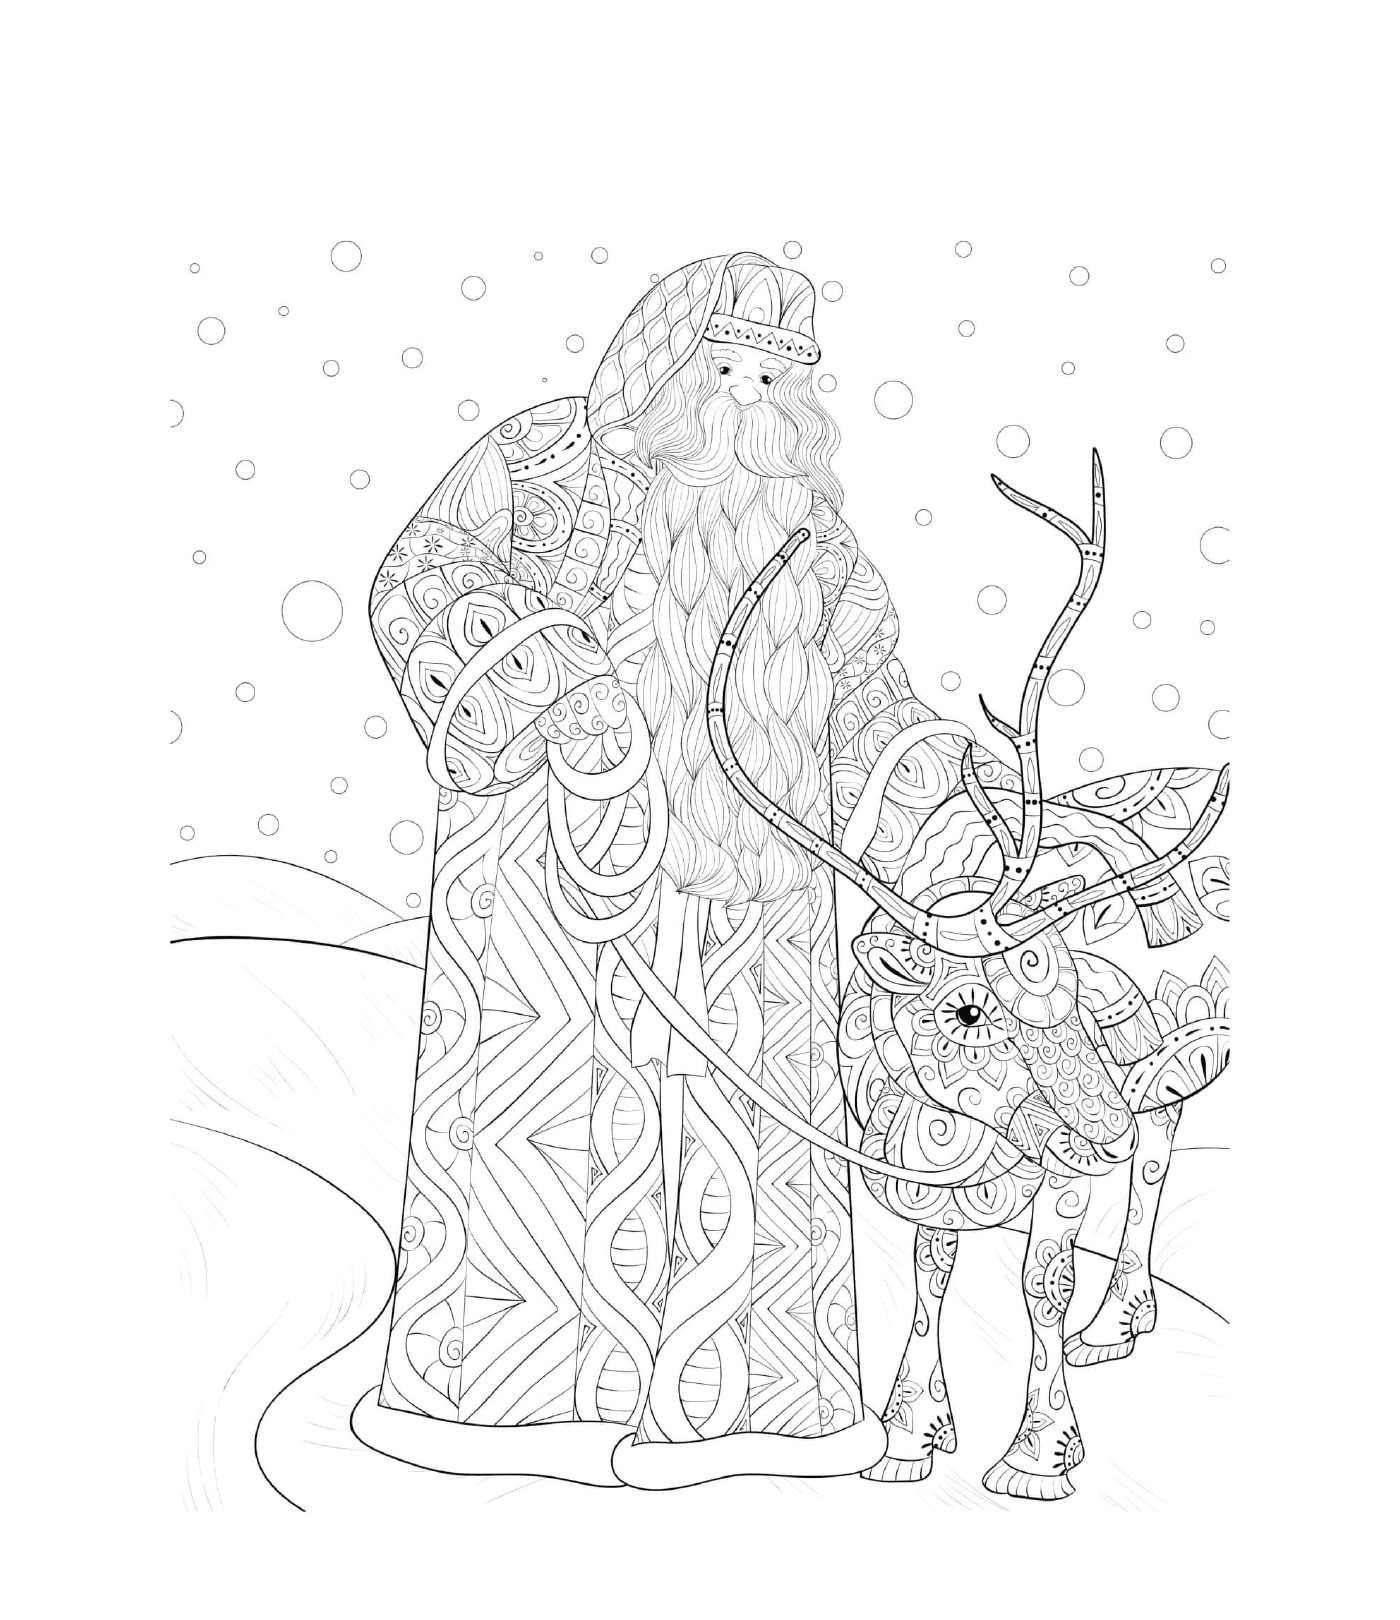  雪地中的圣诞老人和驯鹿 